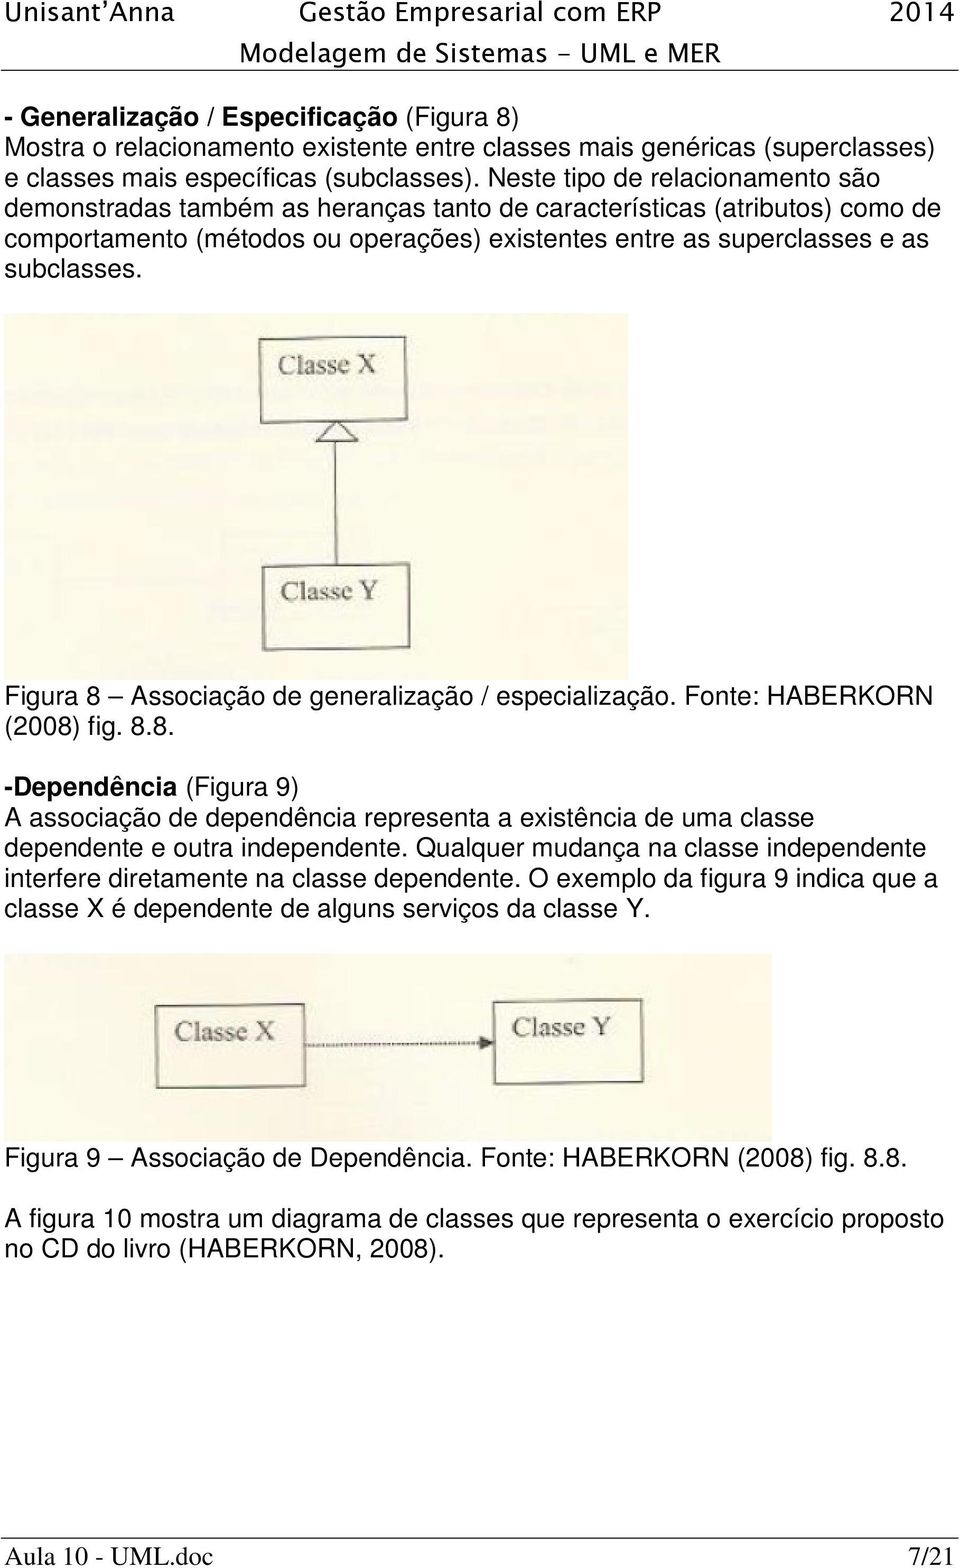 Figura 8 Associação de generalização / especialização. Fonte: HABERKORN (2008) fig. 8.8. -Dependência (Figura 9) A associação de dependência representa a existência de uma classe dependente e outra independente.